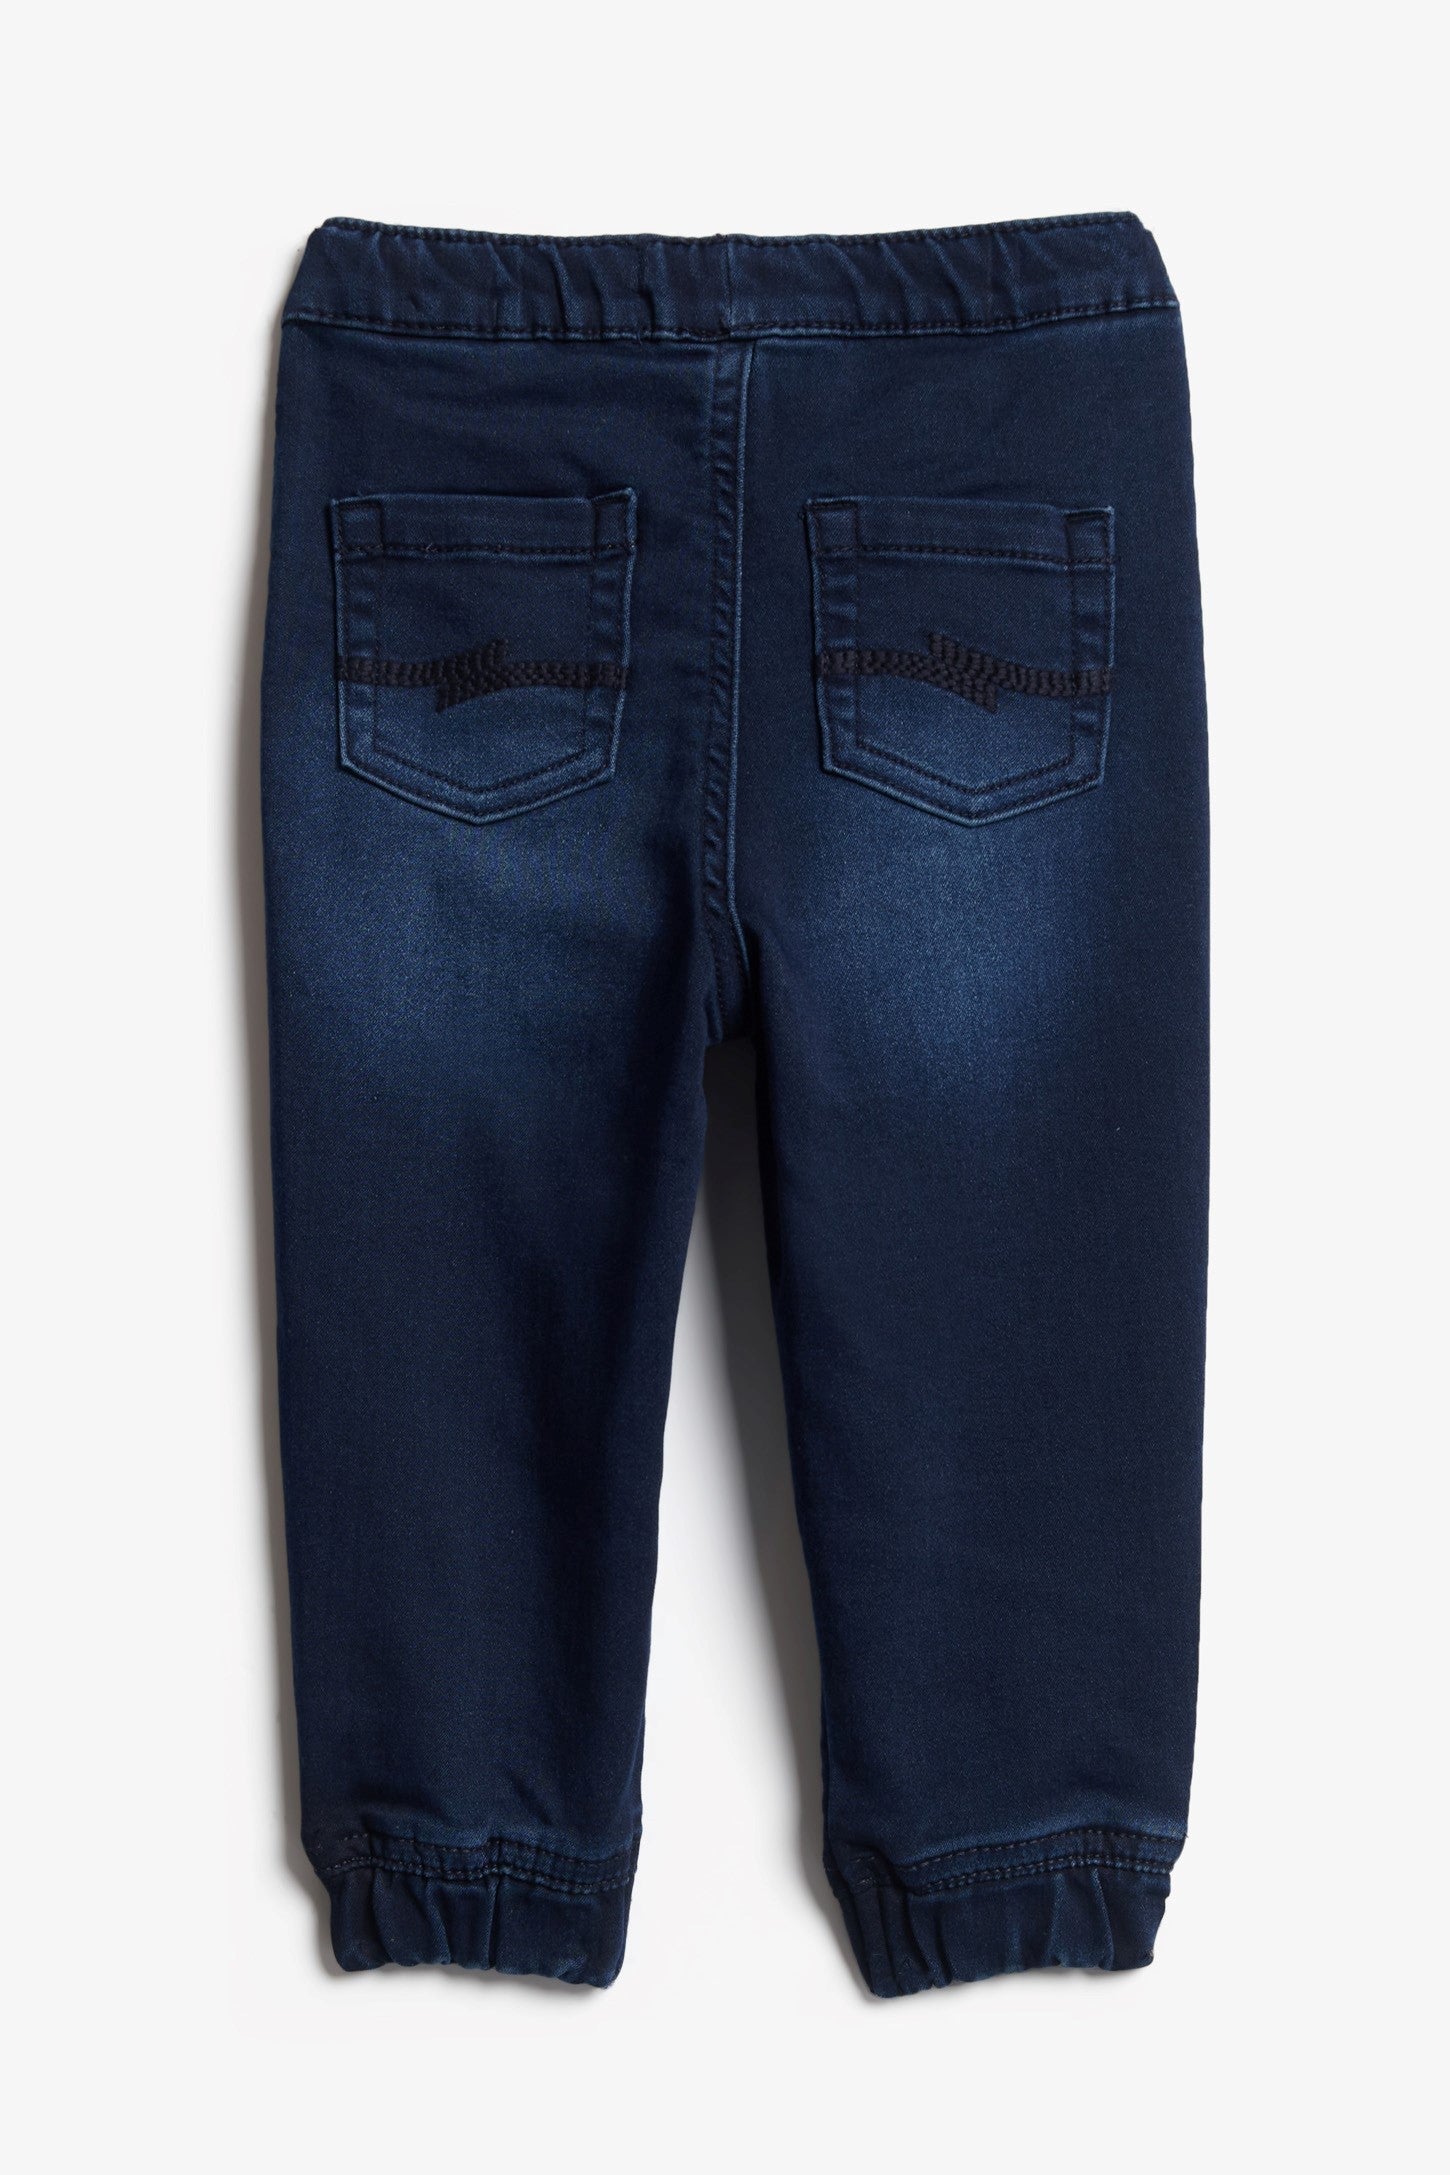 Pantalon jogger jeans, 2T-3T - Bébé garçon && BLEU MOYEN